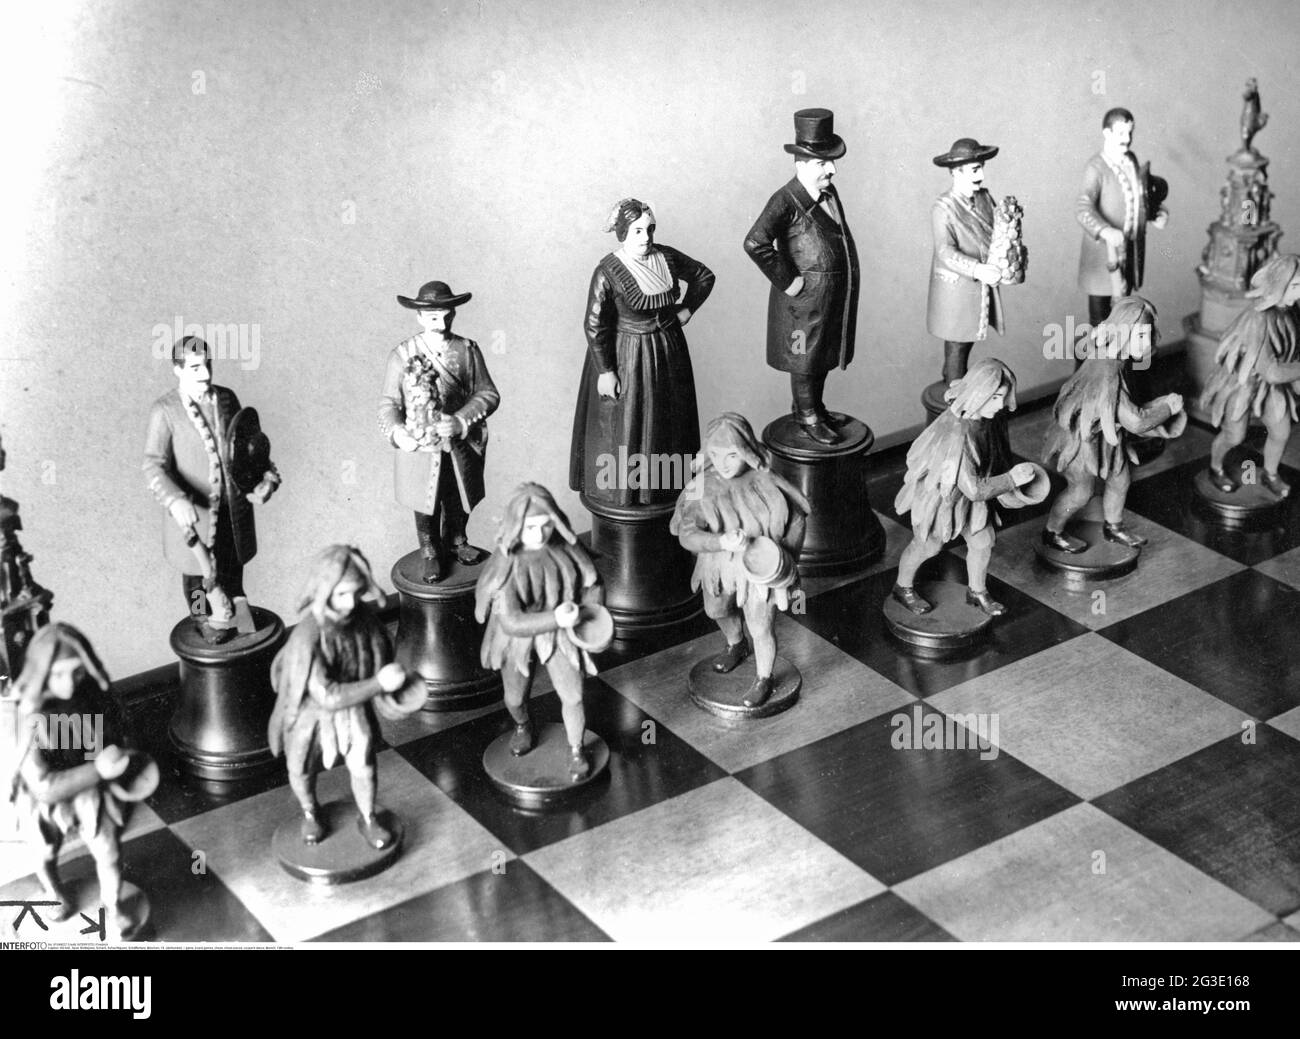 jeu, jeux de société, échecs, pièces d'échecs, cooper's dance, Munich, 19e siècle, INFO-DROITS-SUPPLÉMENTAIRES-NON-DISPONIBLE Banque D'Images